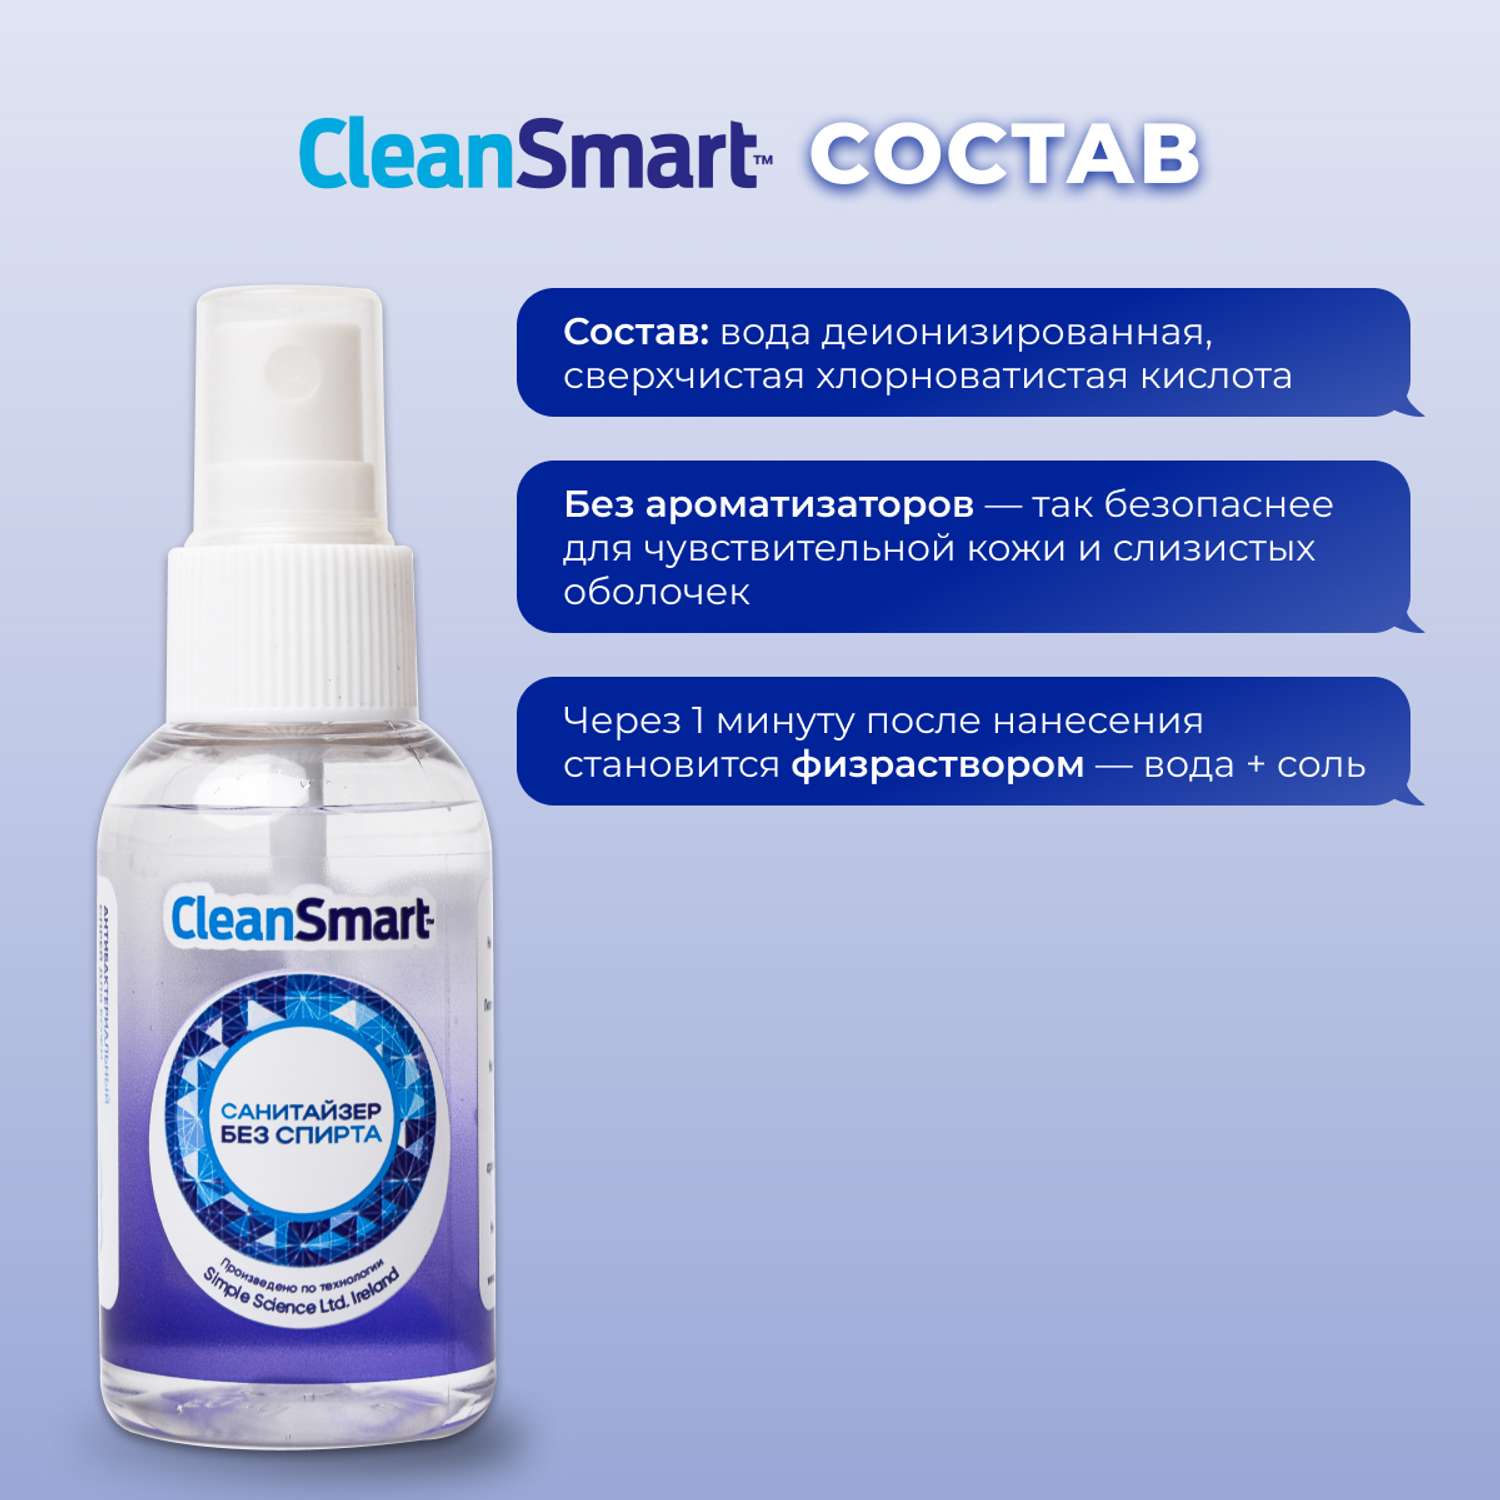 Антибактериальный спрей CleanSmart Антисептик для рук и поверхностей санитайзер для всей семьи 50 мл - фото 6